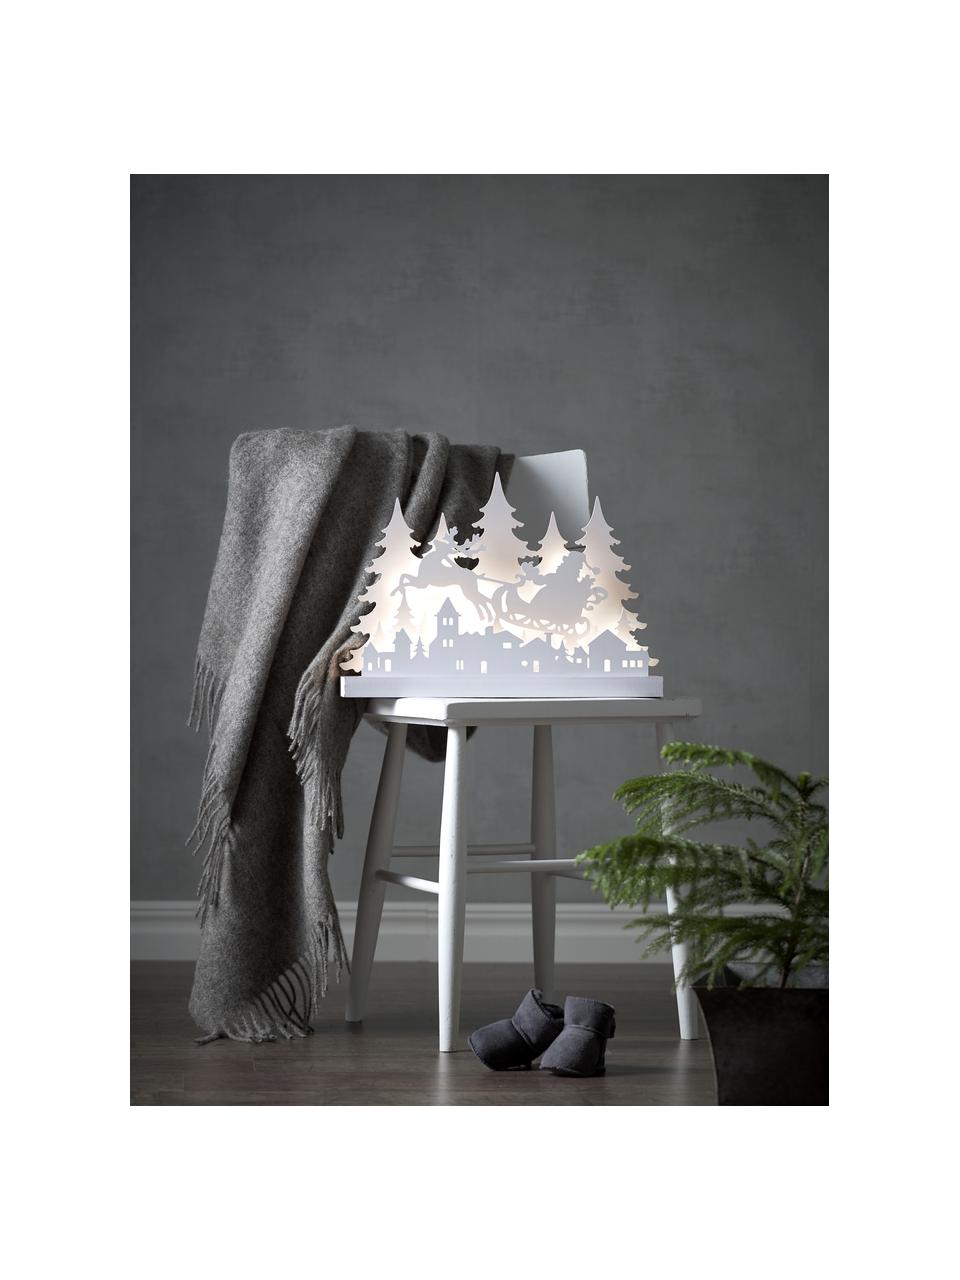 Decorazione natalizia luminosa con funzione timer Grandy, Legno, Legno laccato bianco, Larg. 42 x Alt. 30 cm